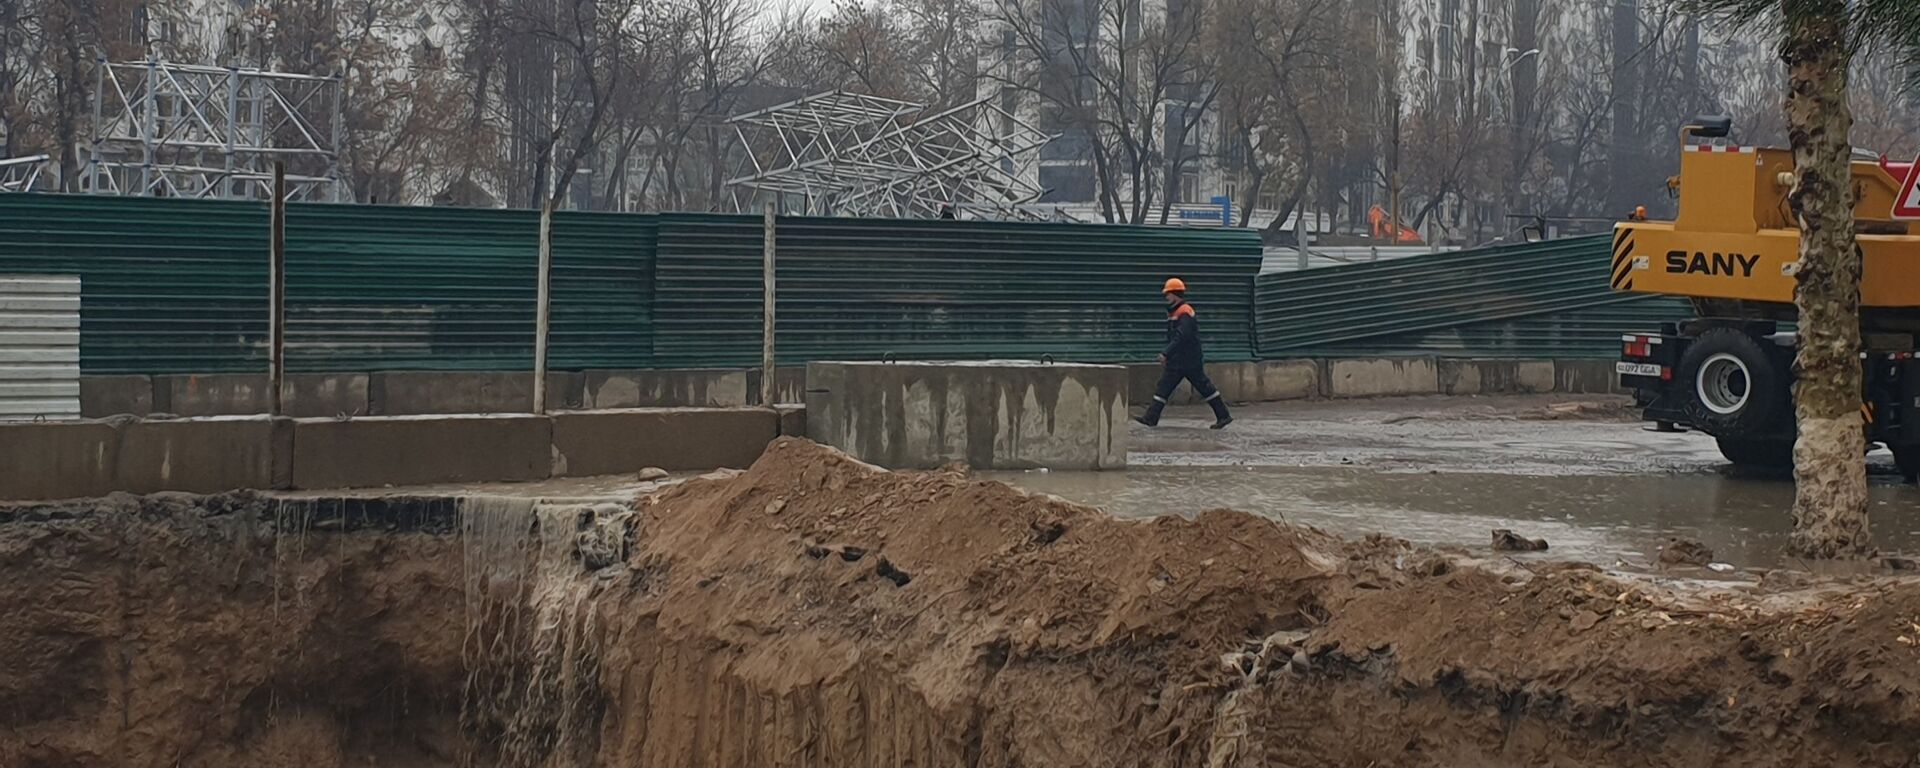 В Ташкенте обрушилась часть строящейся линии метро - Sputnik Таджикистан, 1920, 18.12.2019